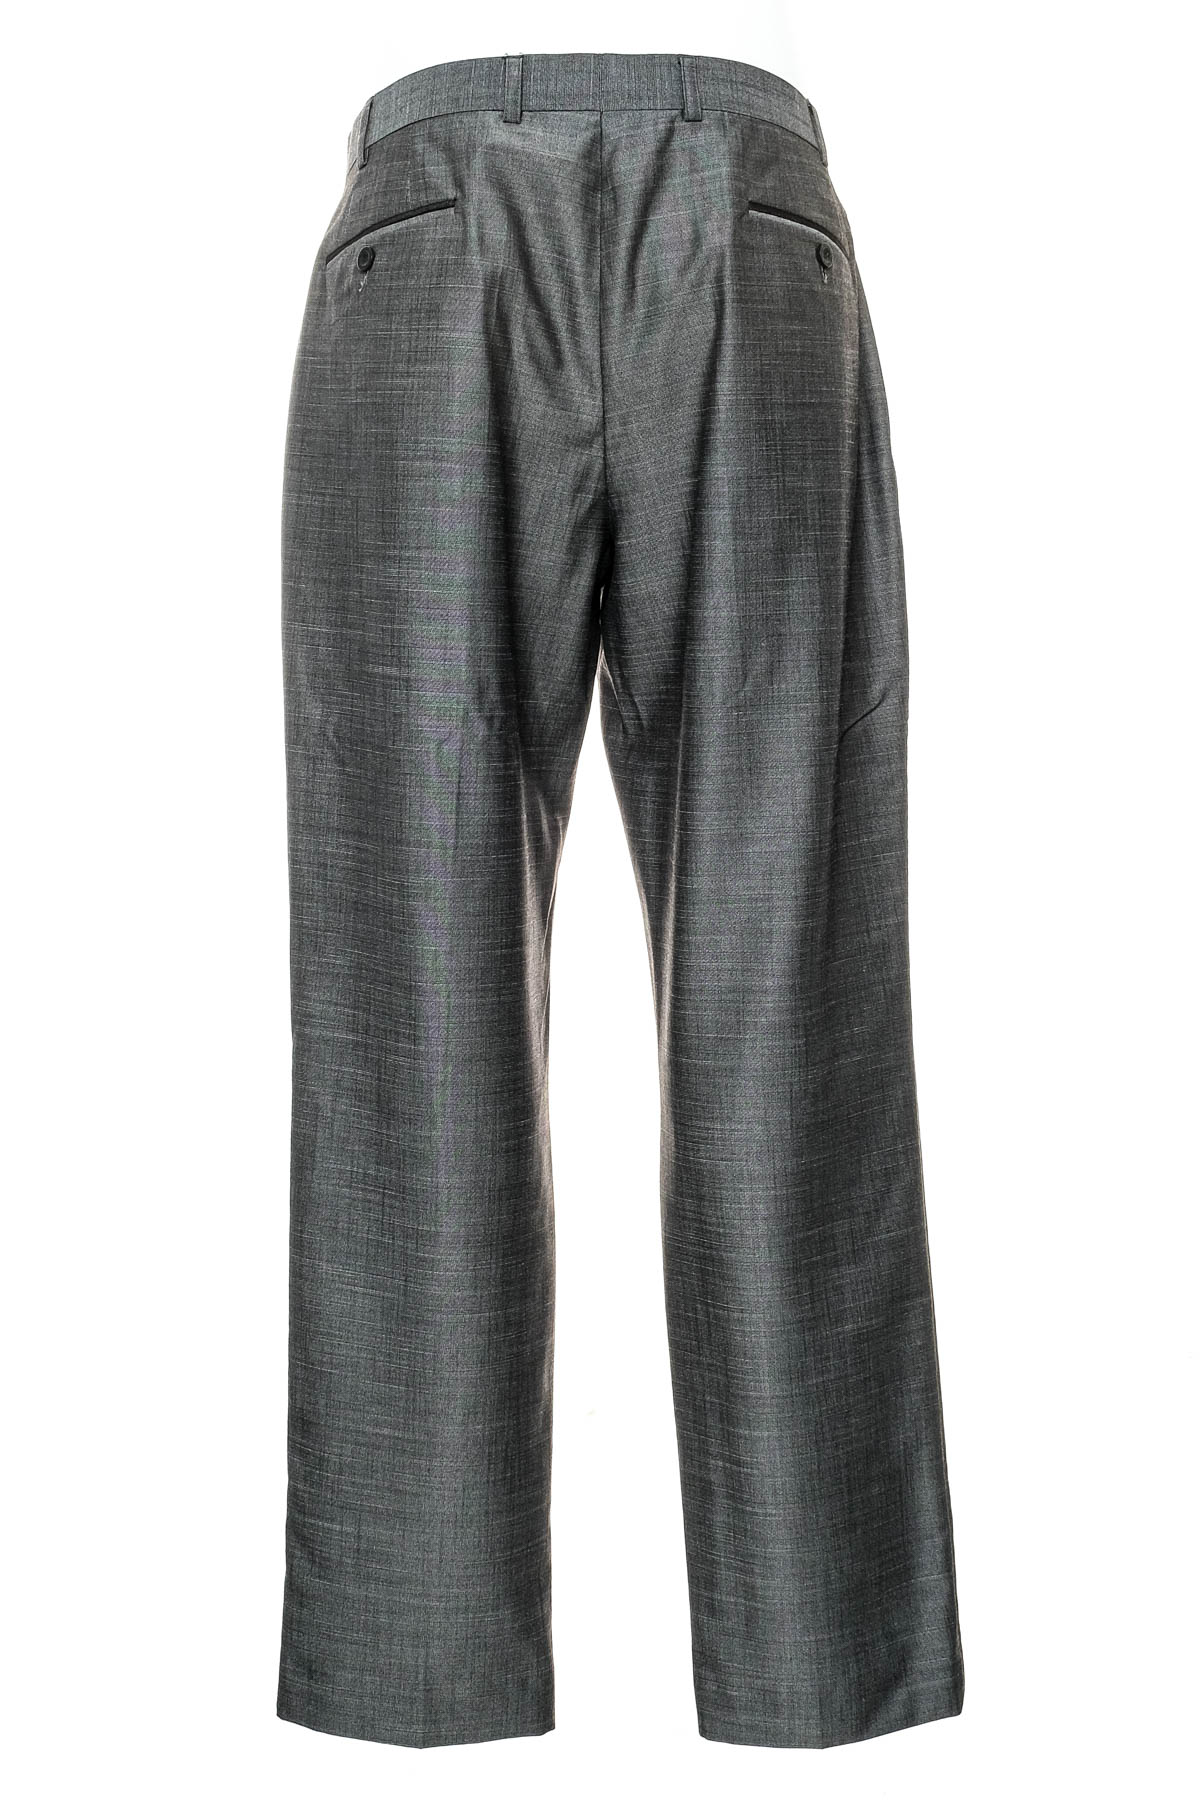 Pantalon pentru bărbați - Remus Uomo - 1